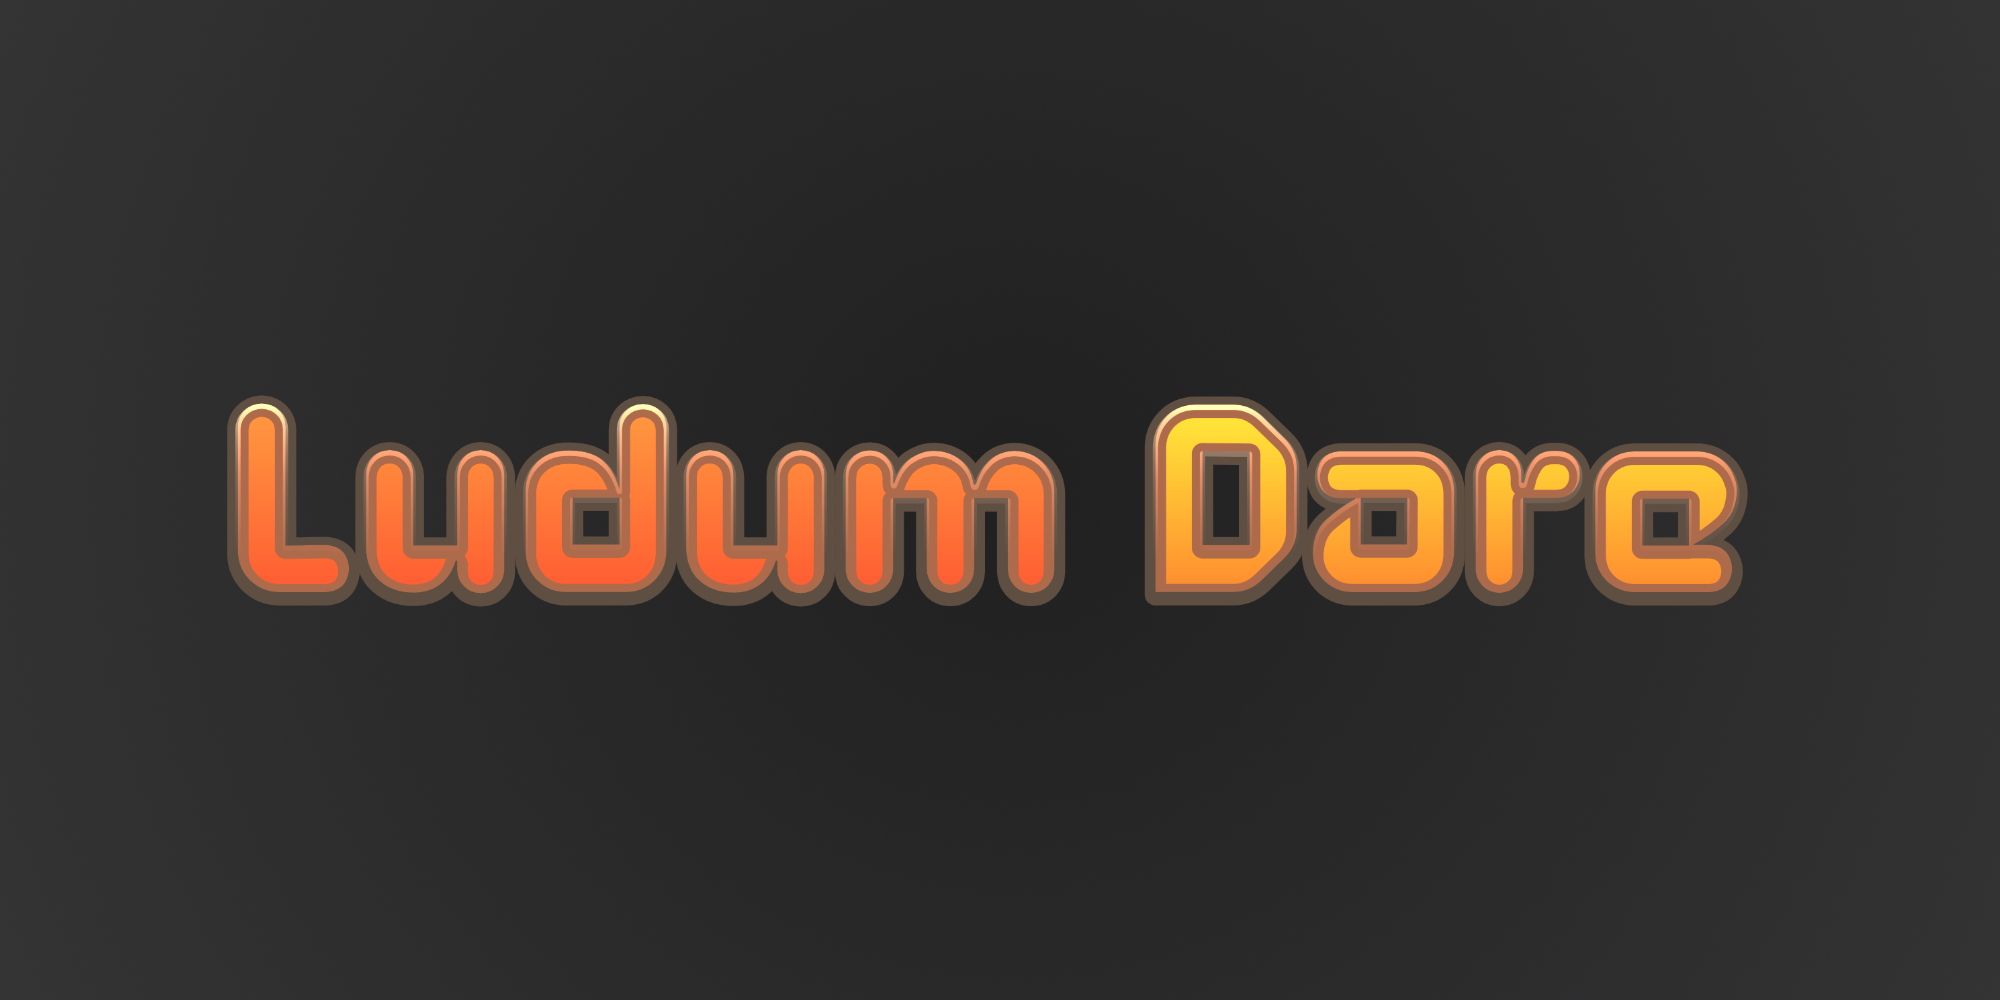 the Ludum Dare logo